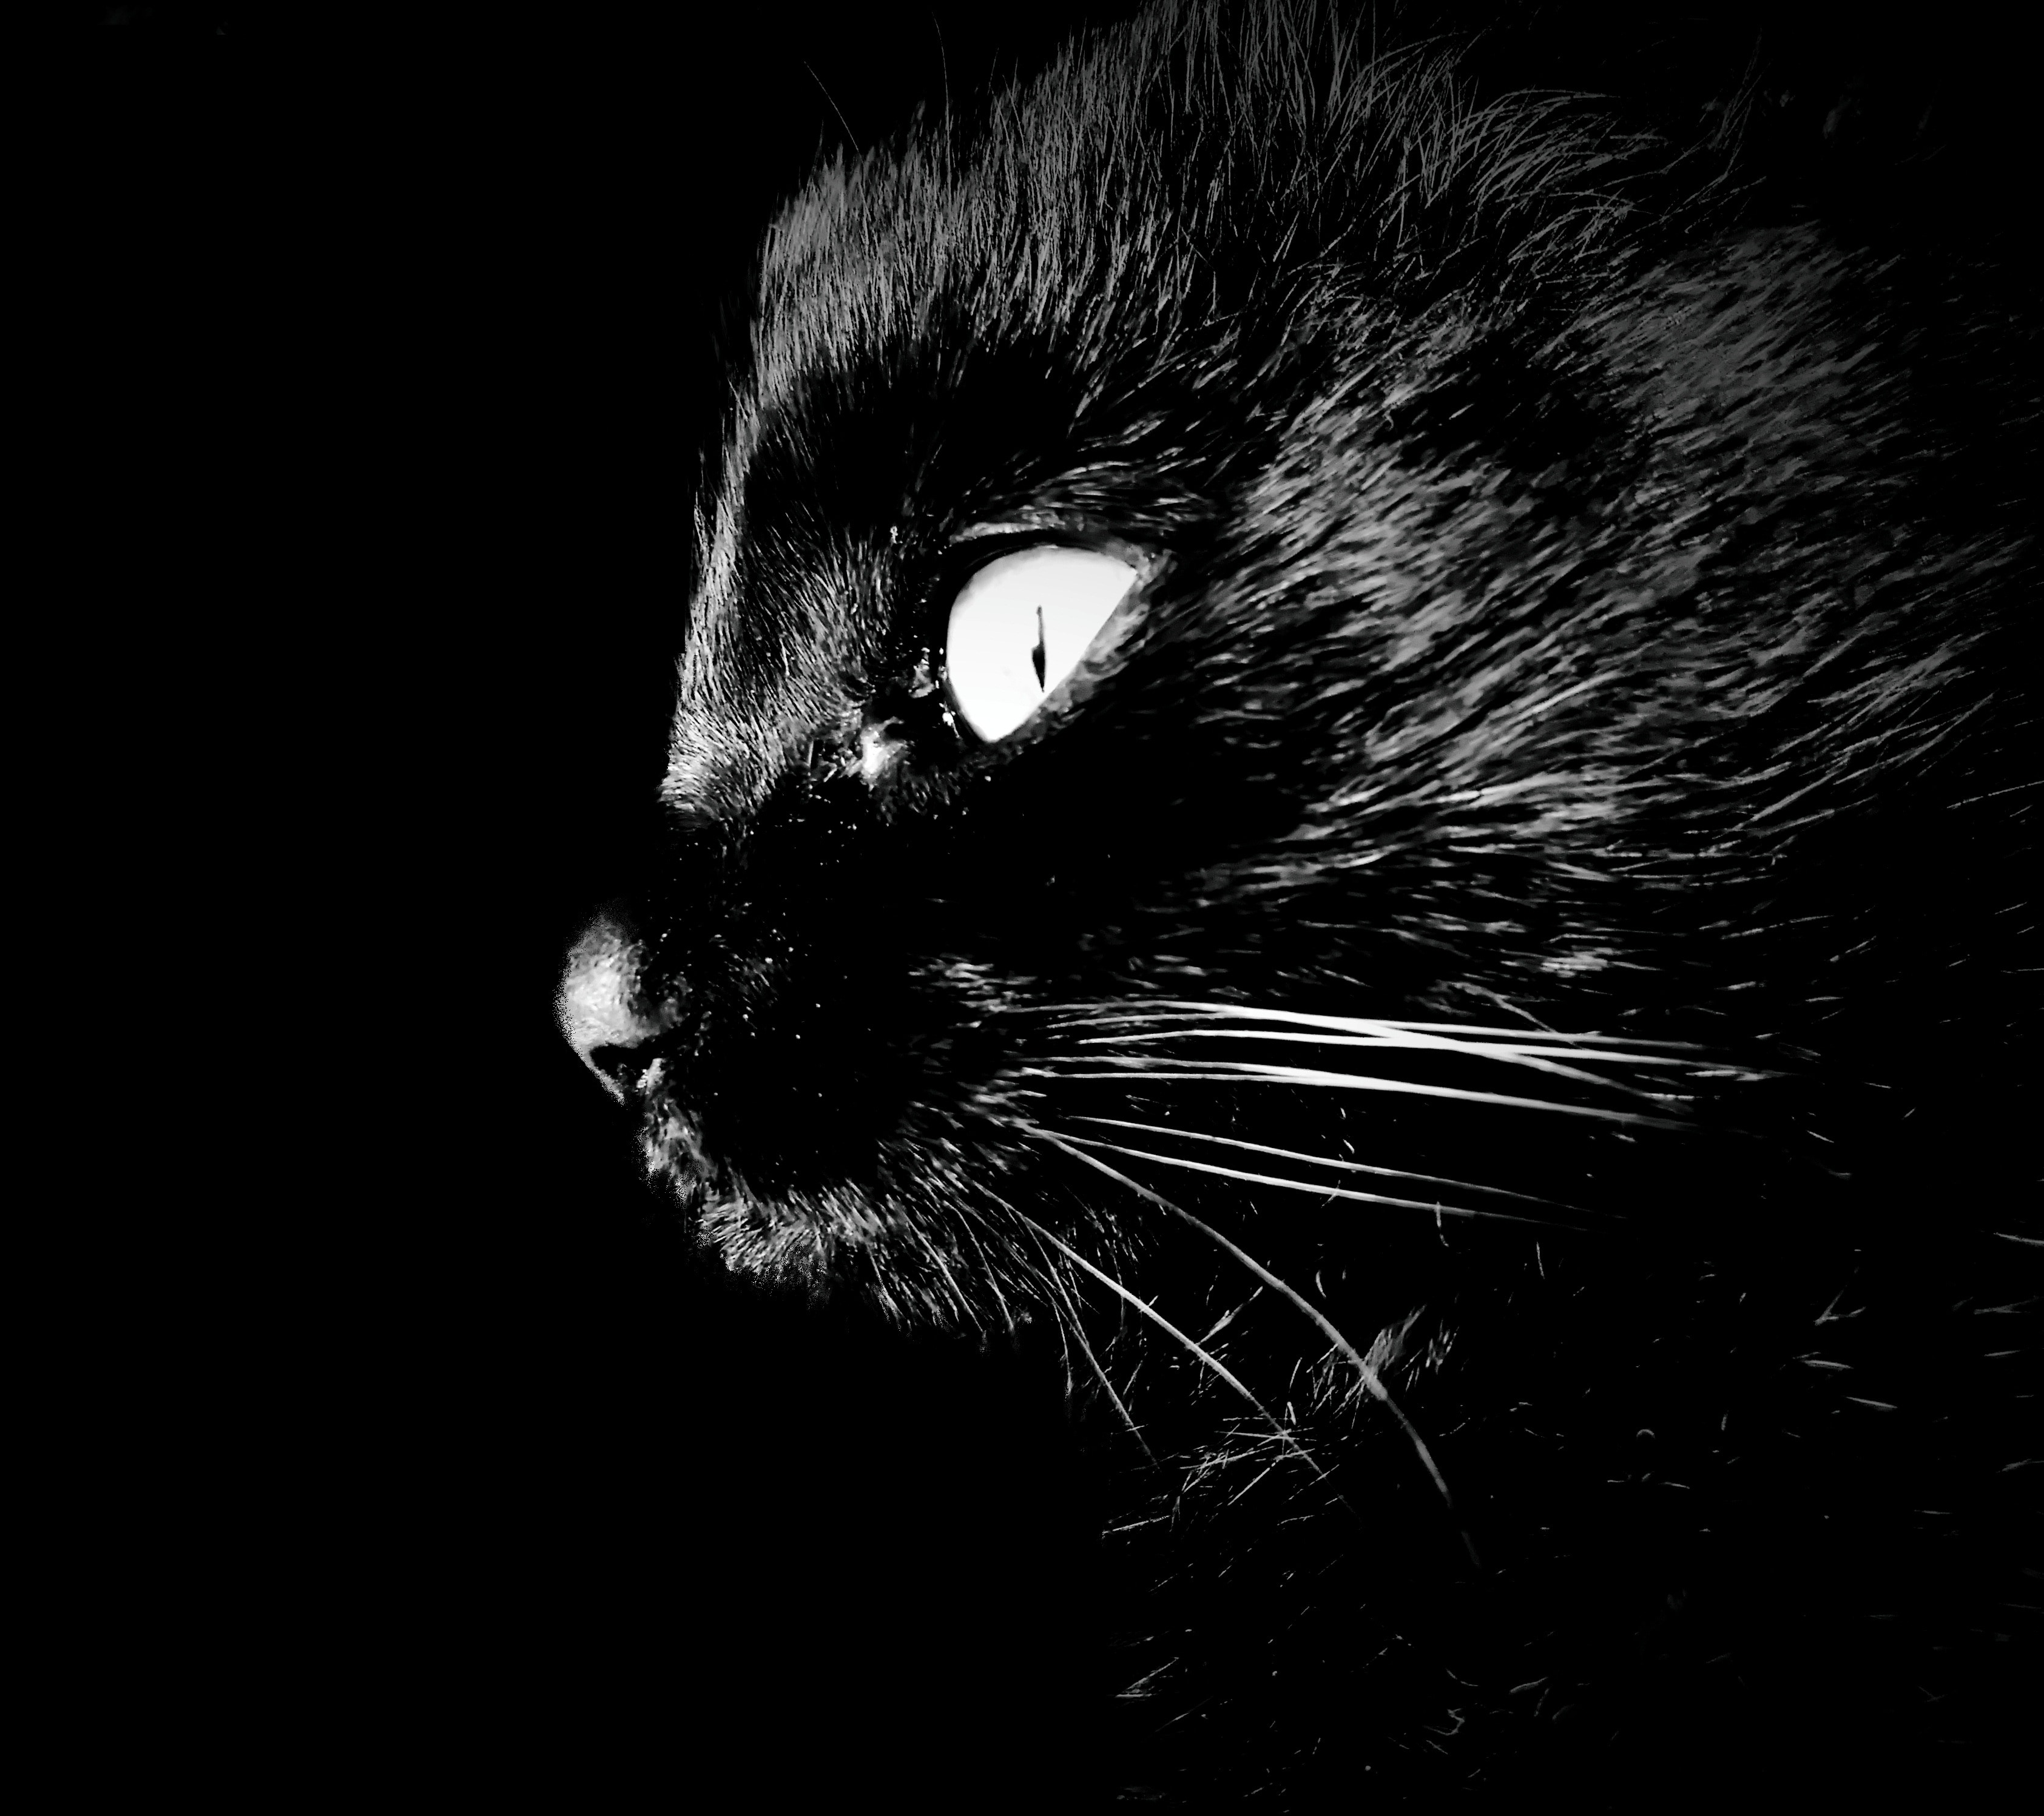 black coated cat